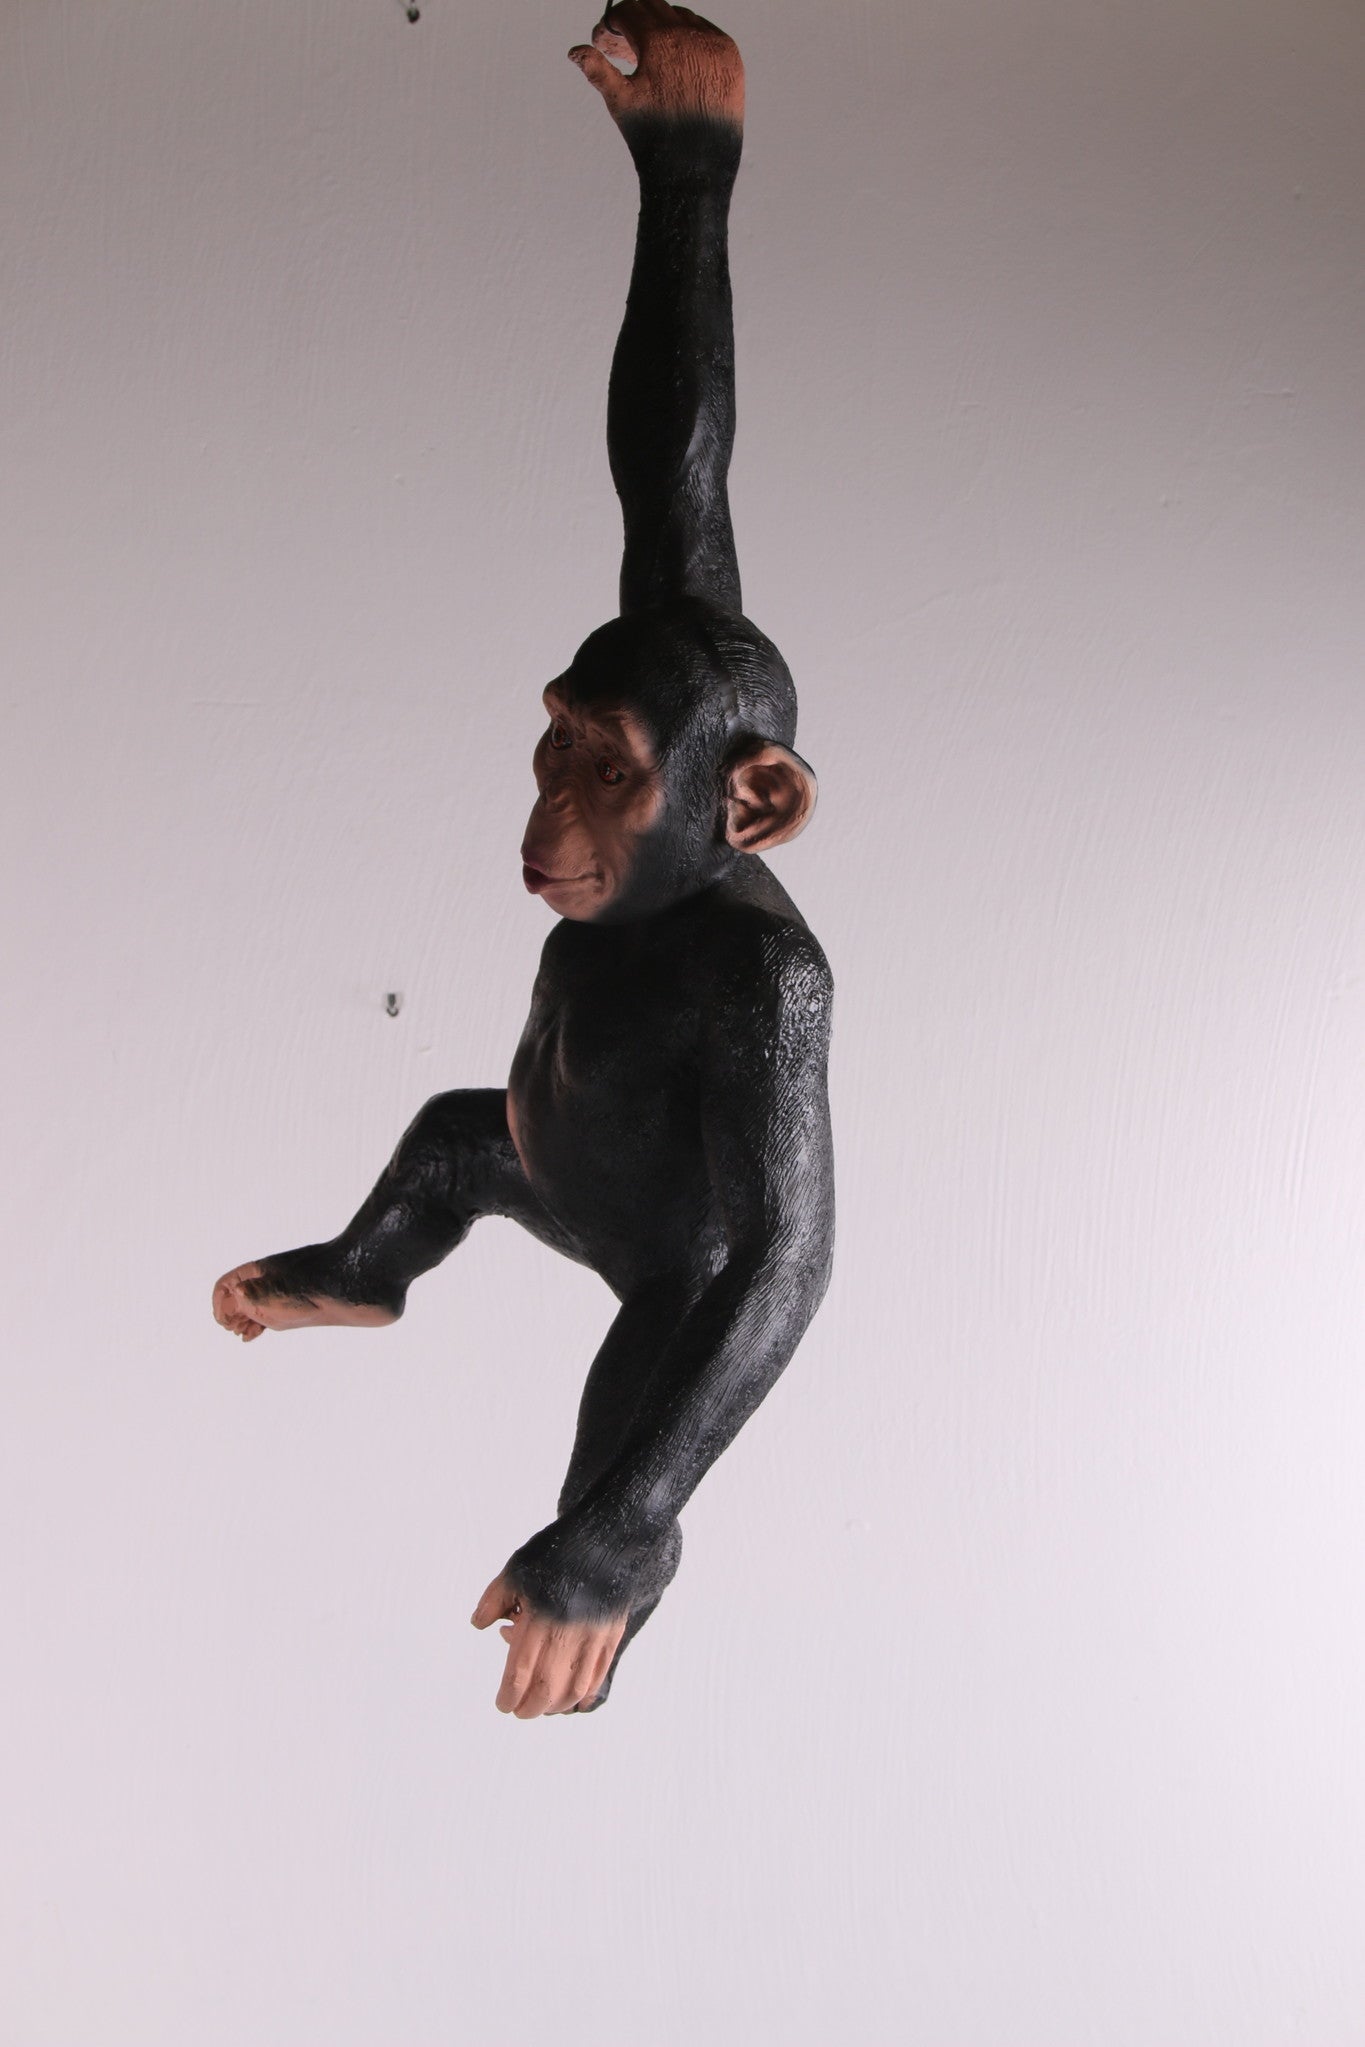 Hangende aap gemaakt om ergens aan te hangen zijkant